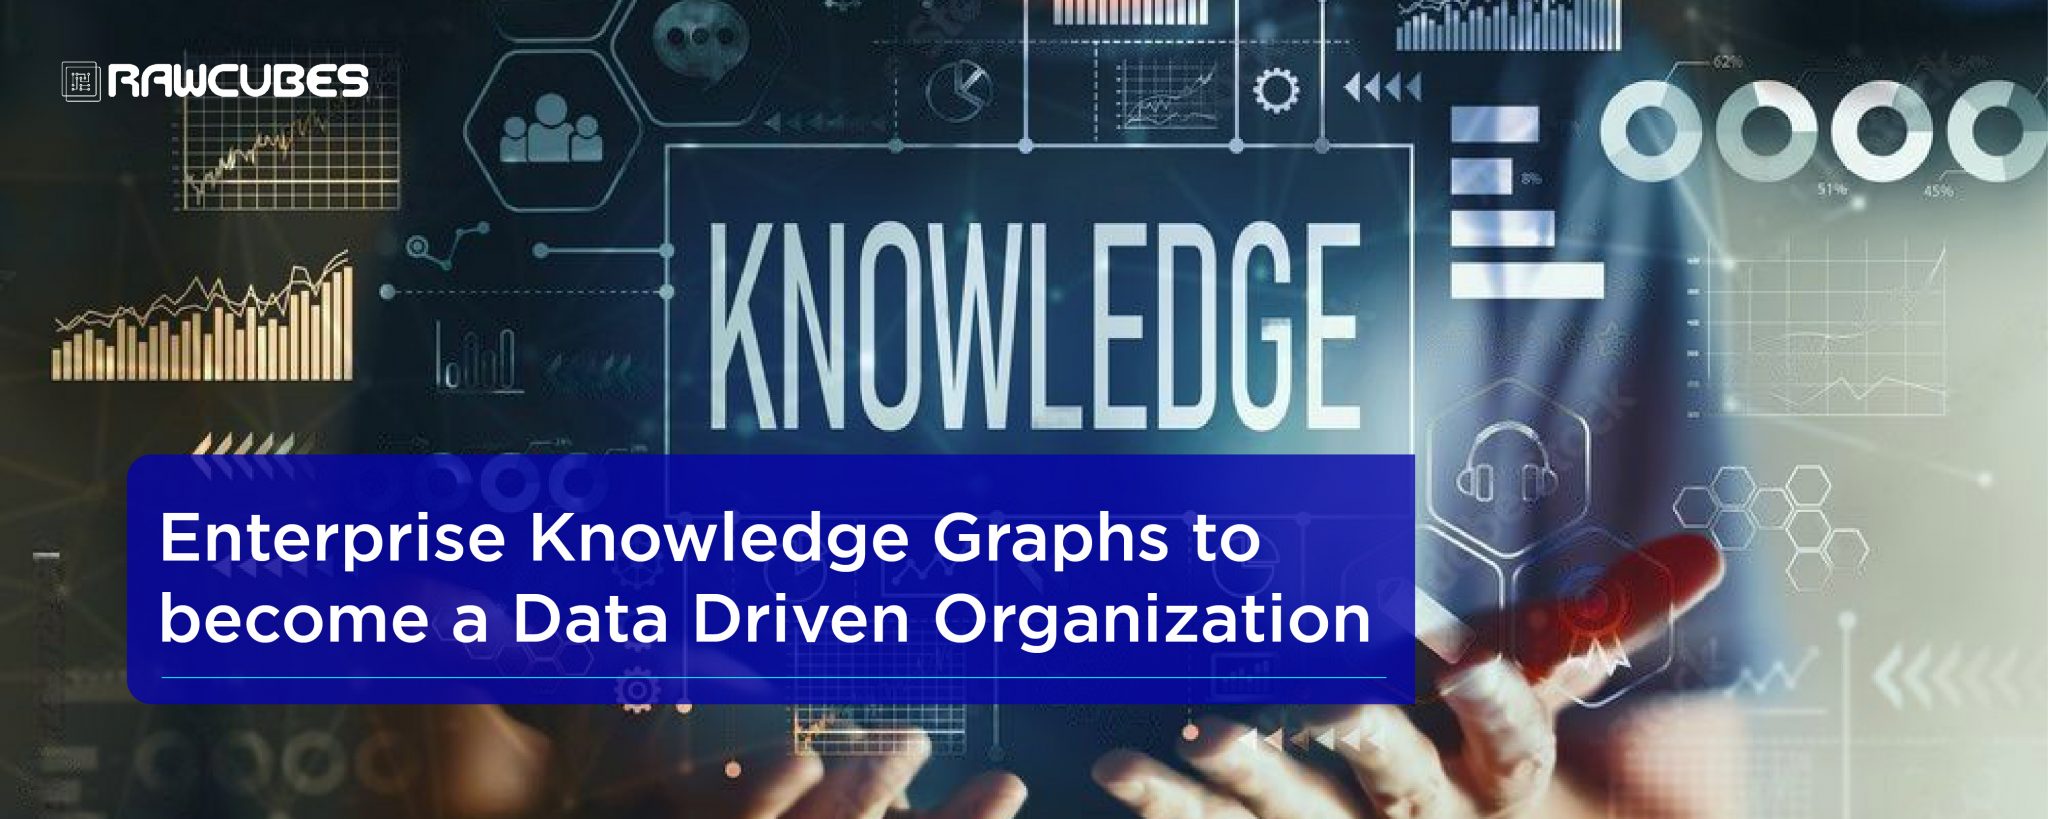 enterprise knowledge graphs